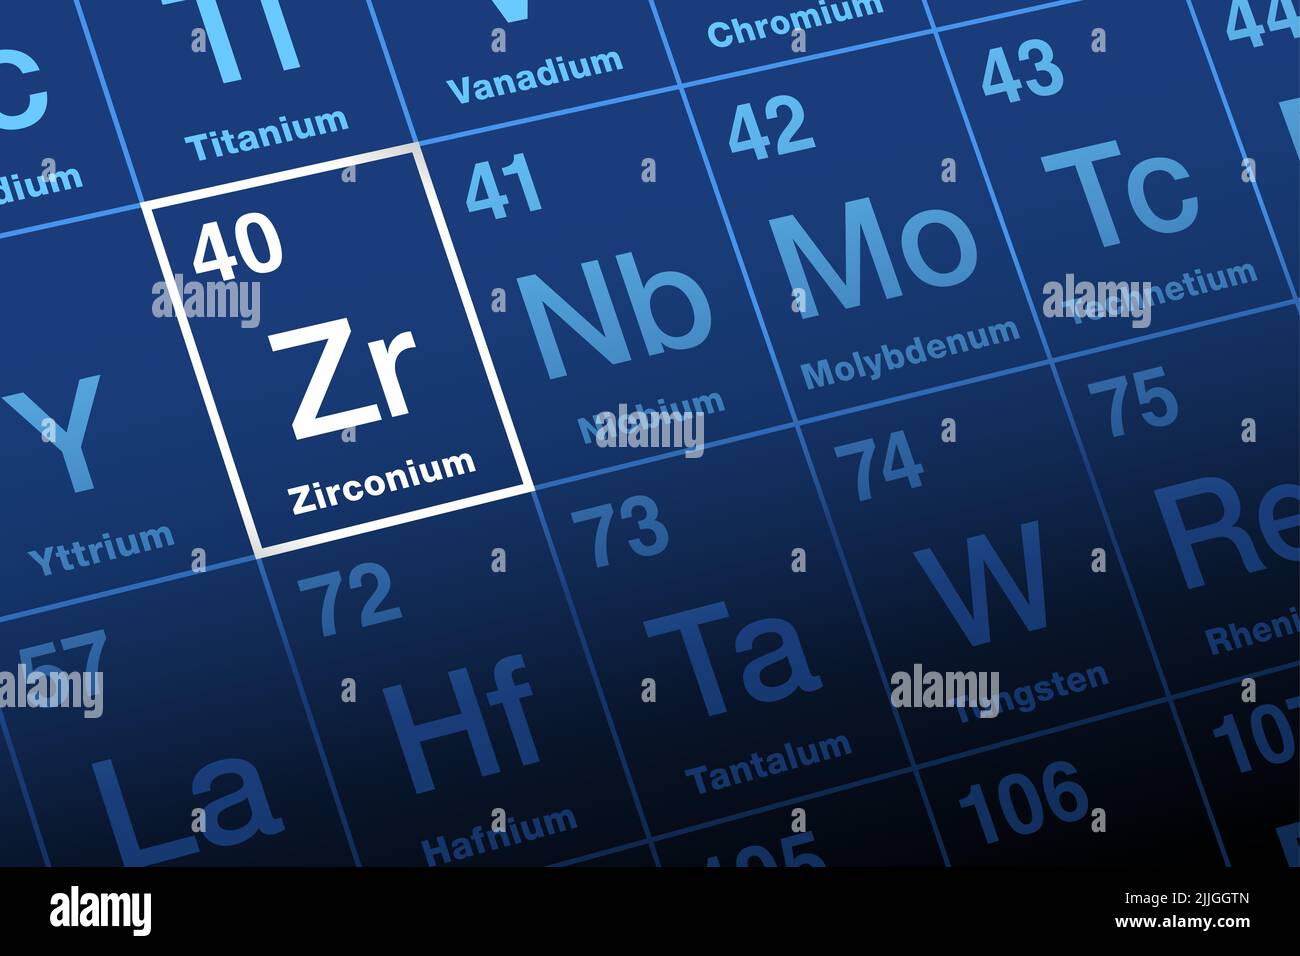 Zirconio su tavola periodica. Metallo di transizione ed elemento, con simbolo Zr dallo zircone minerale, relativo allo zargun persiano per tipo oro. Foto Stock